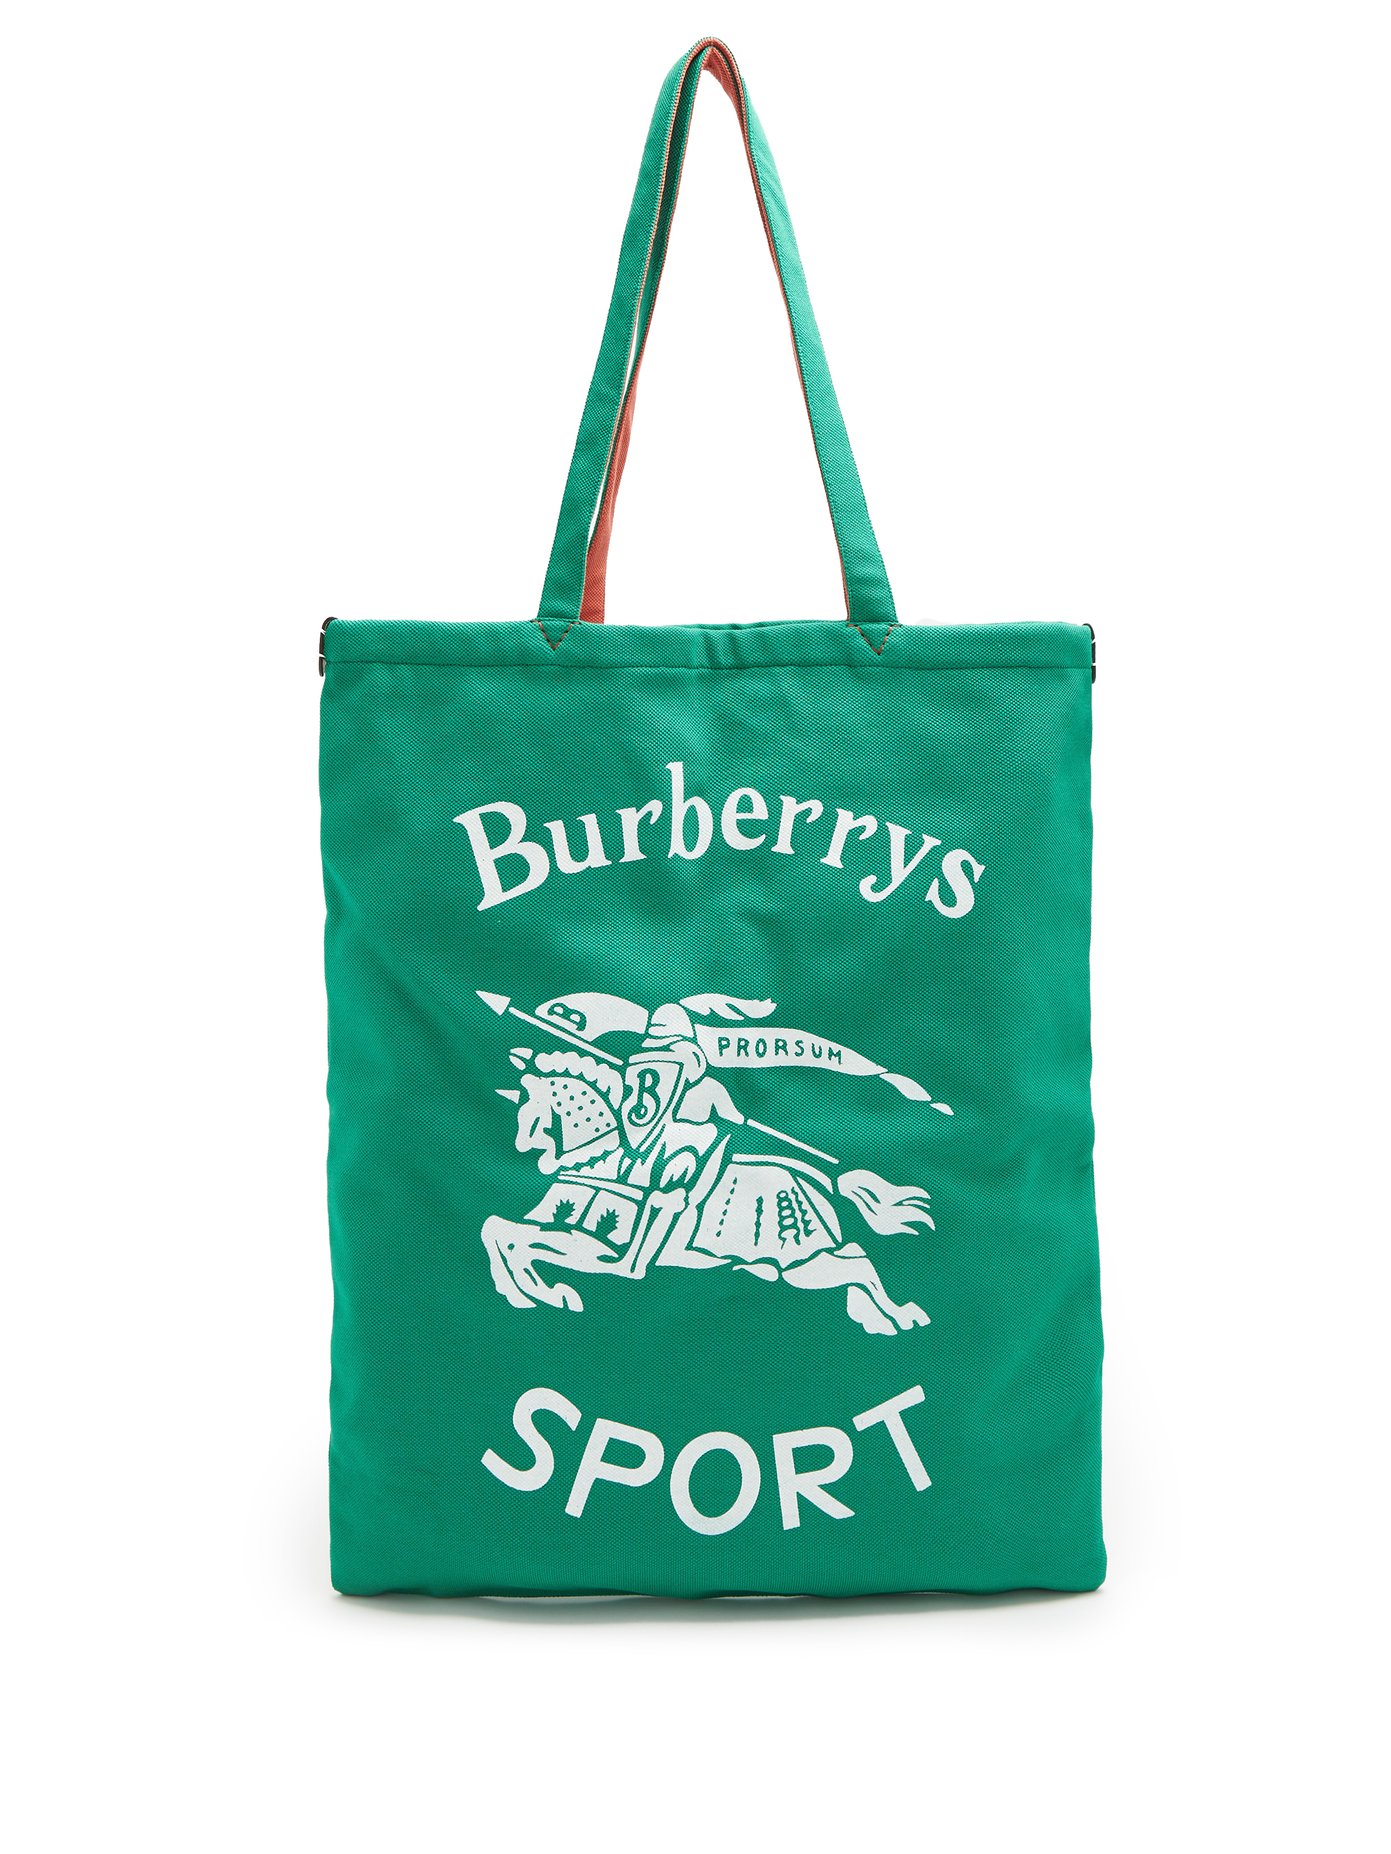 burberry sport bag